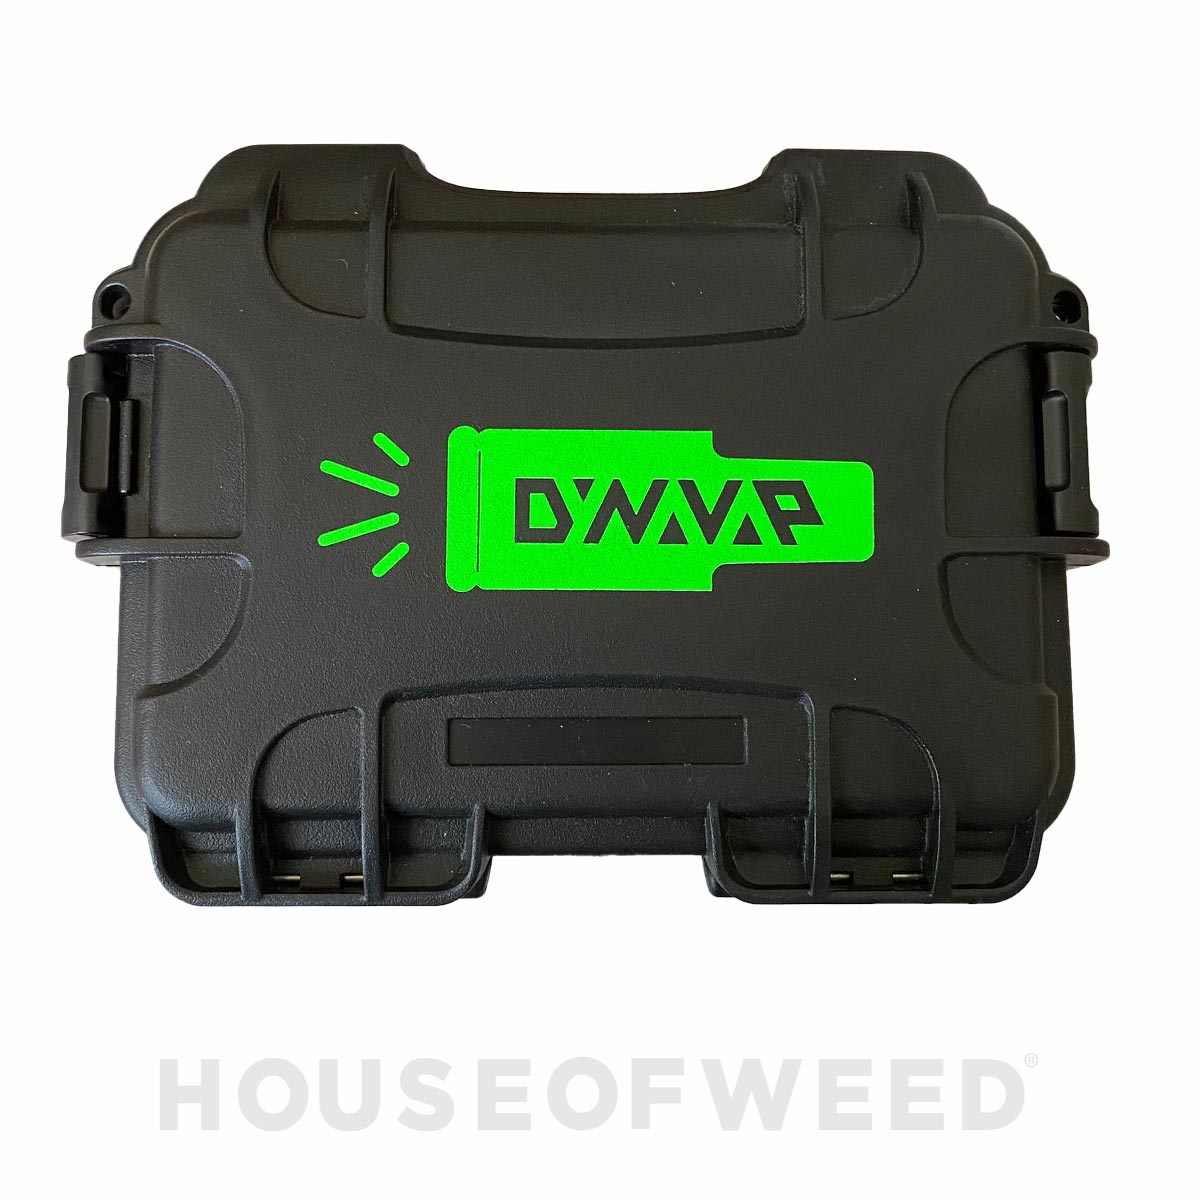 Caja Plástica para Almacenamiento negra con el logo de Dynavap verde neon en el centro.